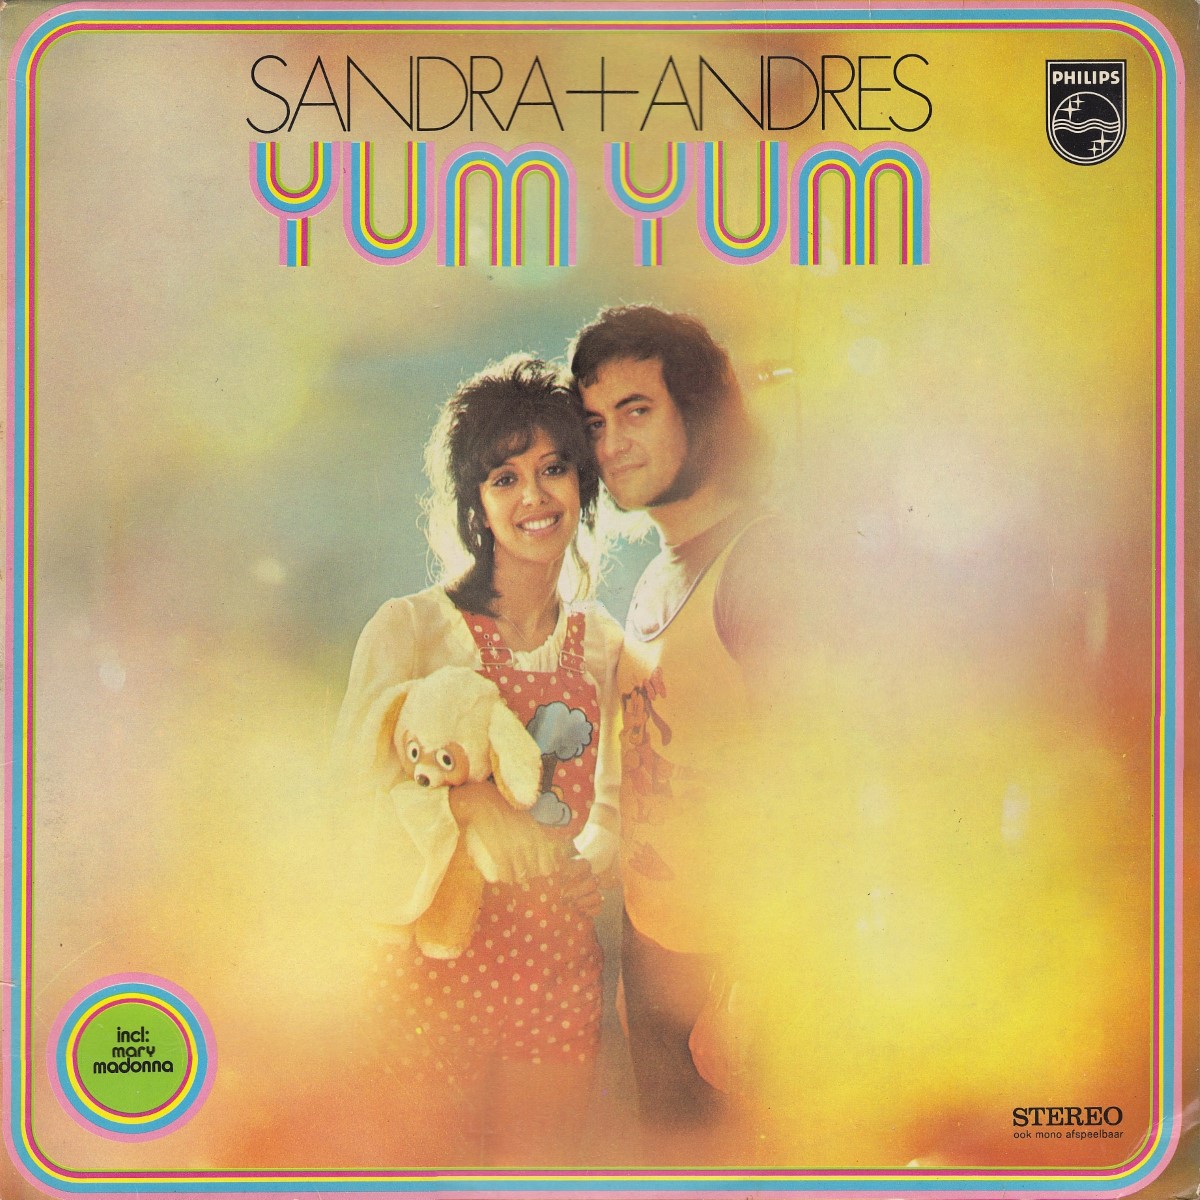 Sandra & Andres - Yum Yum (1974)